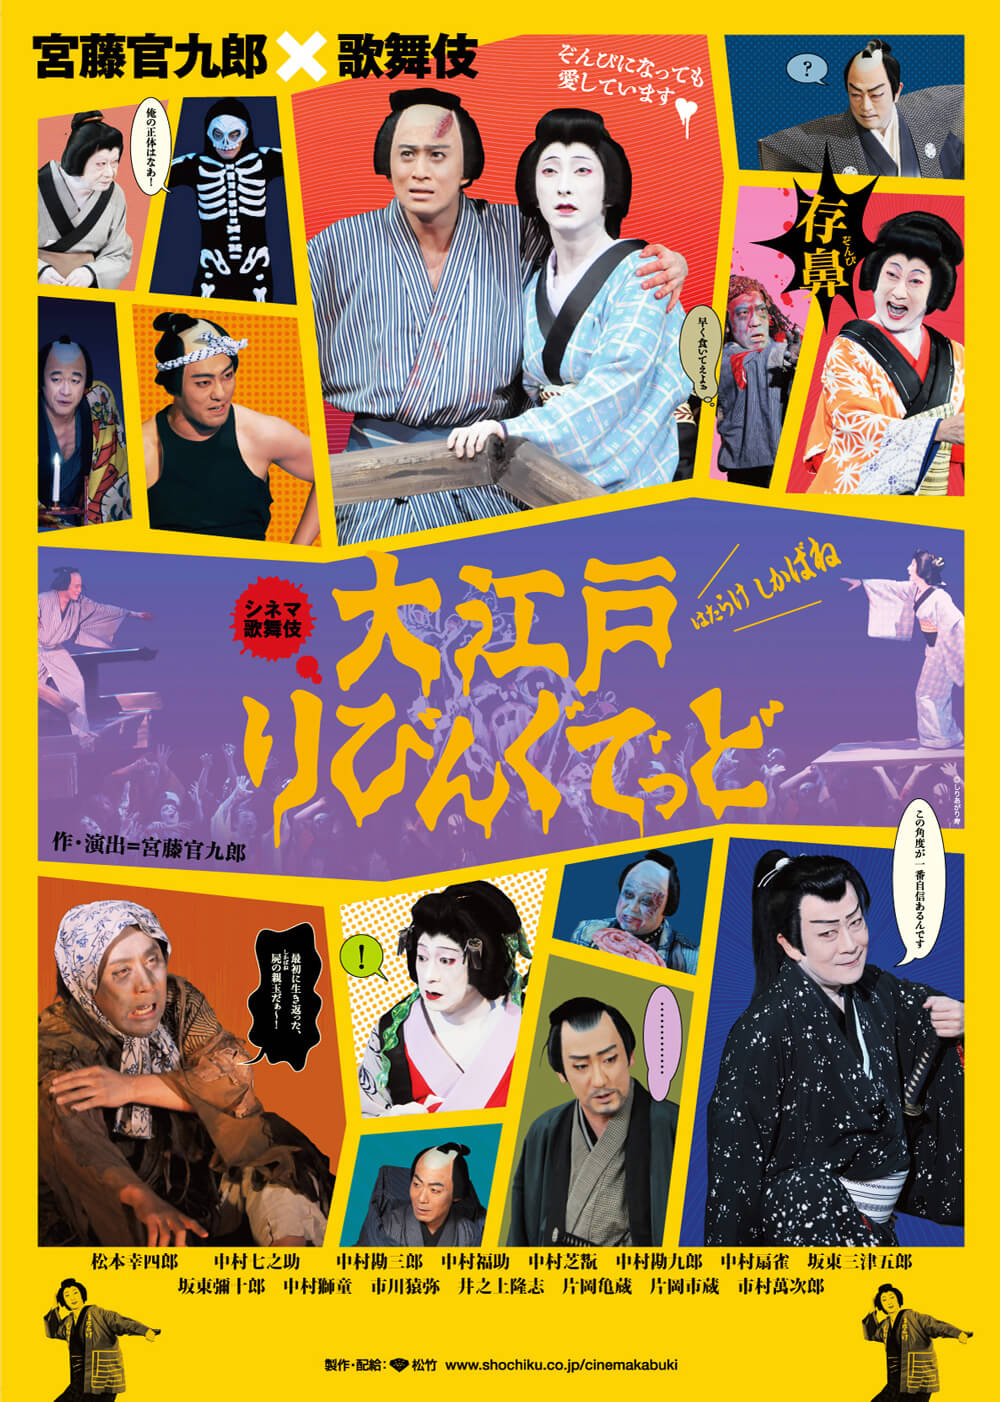 シネマ歌舞伎『大江戸りびんぐでっど』オリジナルステッカー配布のお知らせ